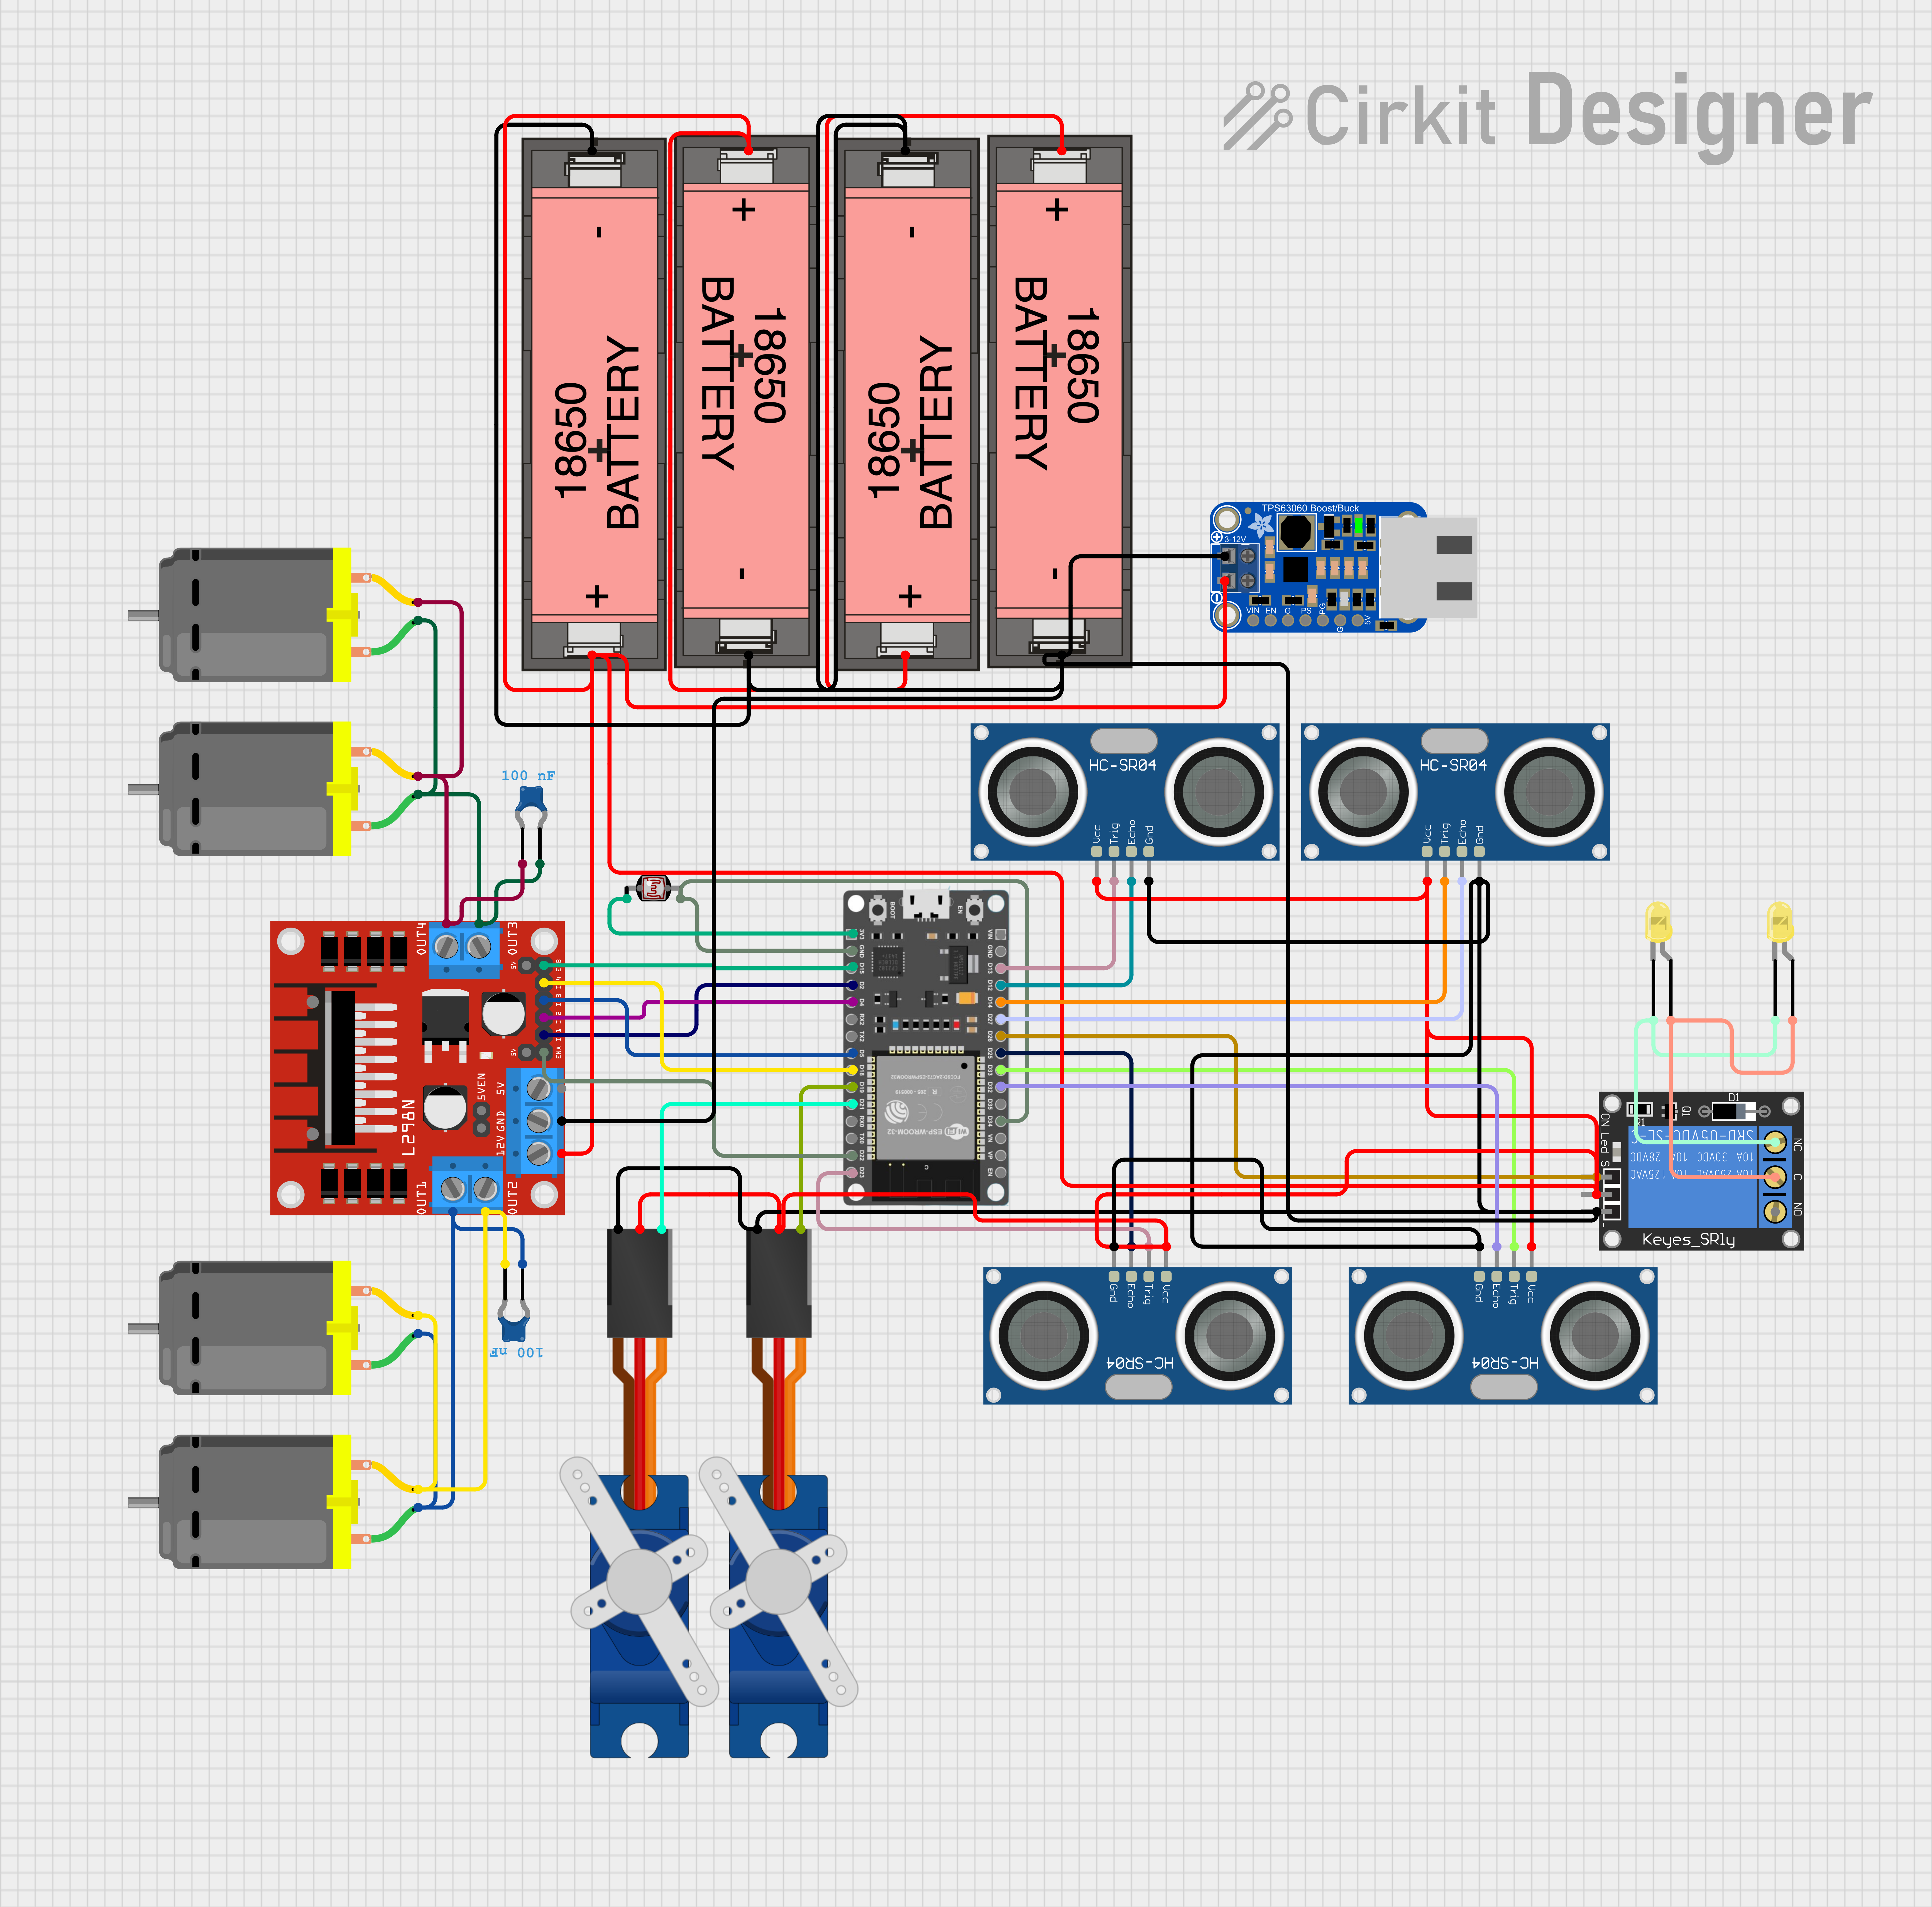 Circuit Design